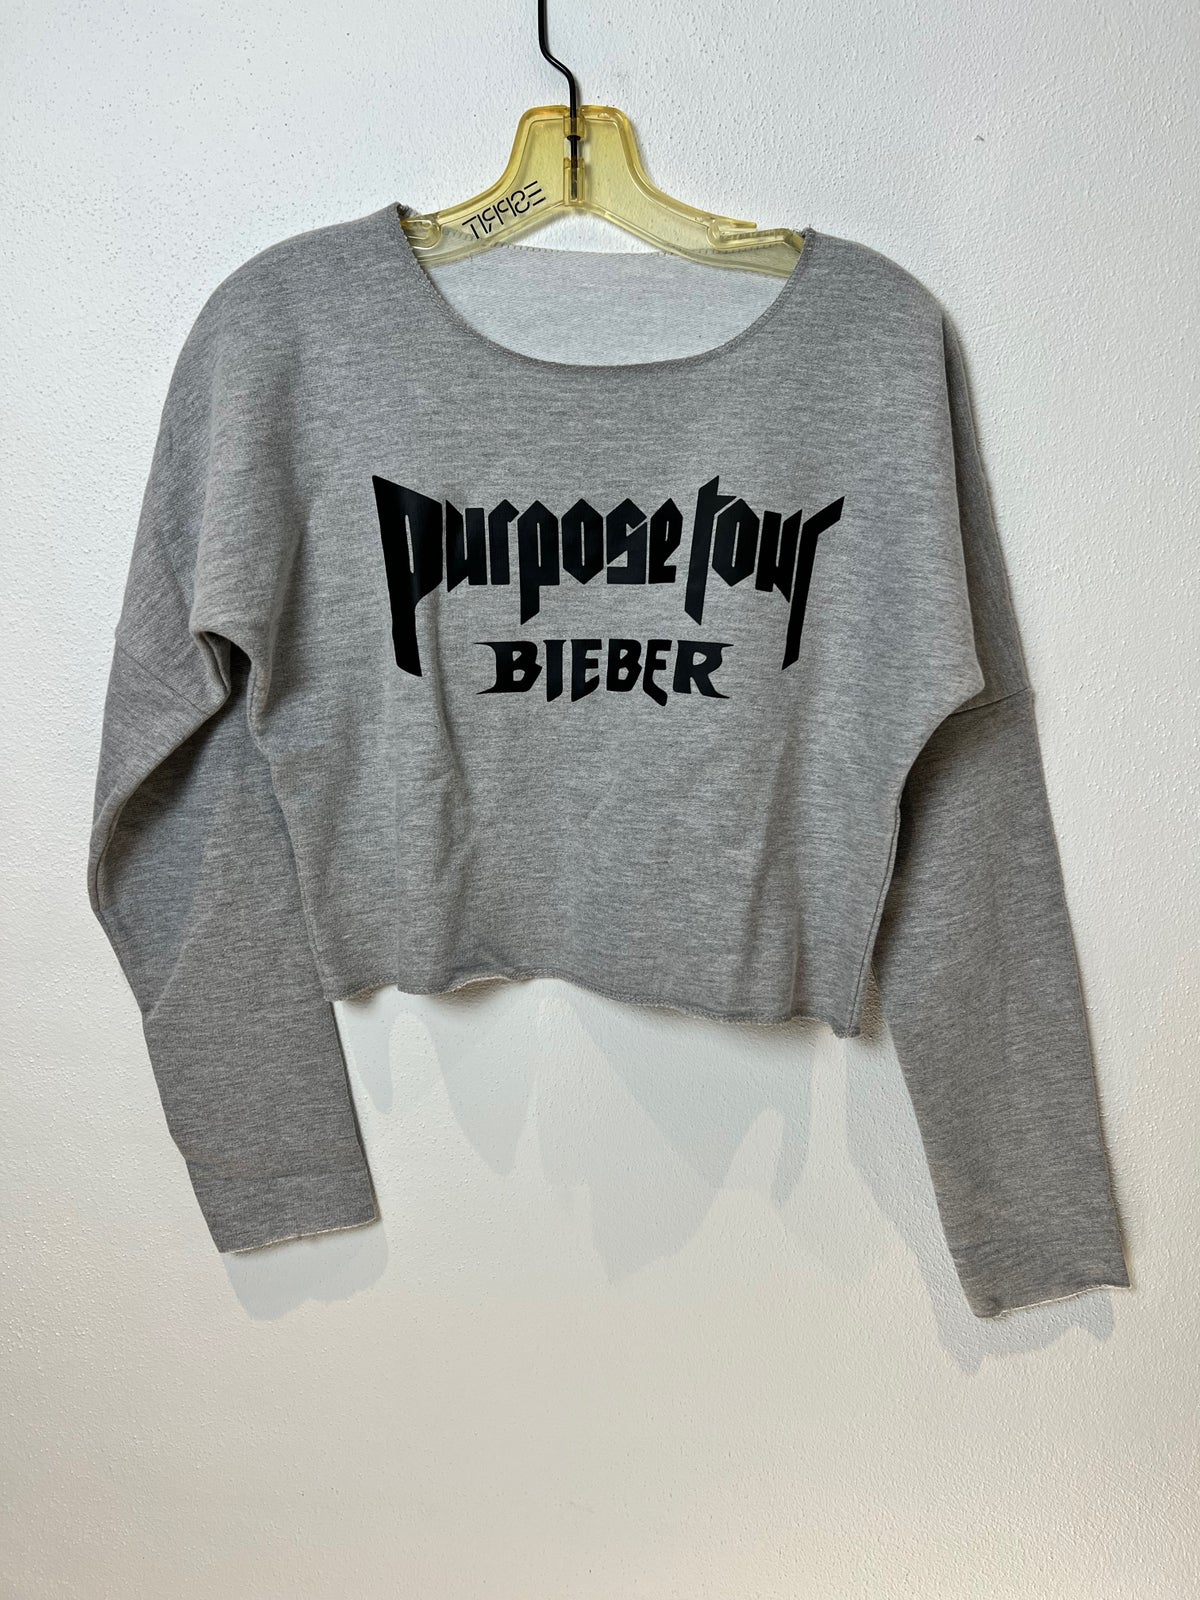 Top, Justin Bieber / Purpose Tour , str. One size – dba.dk – Køb og Salg af og Brugt